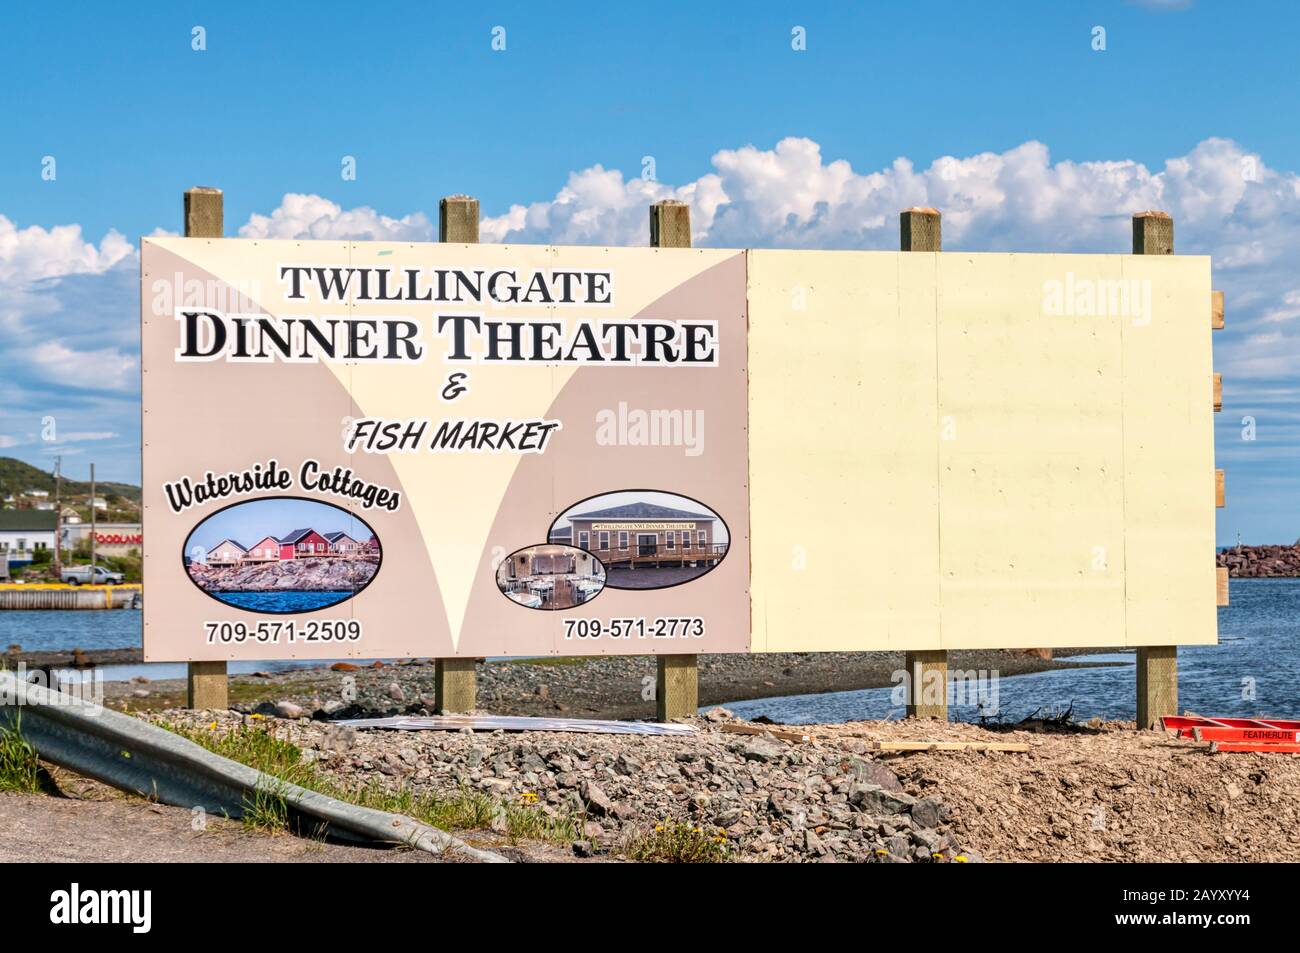 Schild für touristische Attraktionen in Twillingate, Neufundland. Twillingate Dinner Theater & Fischmarkt. Stockfoto